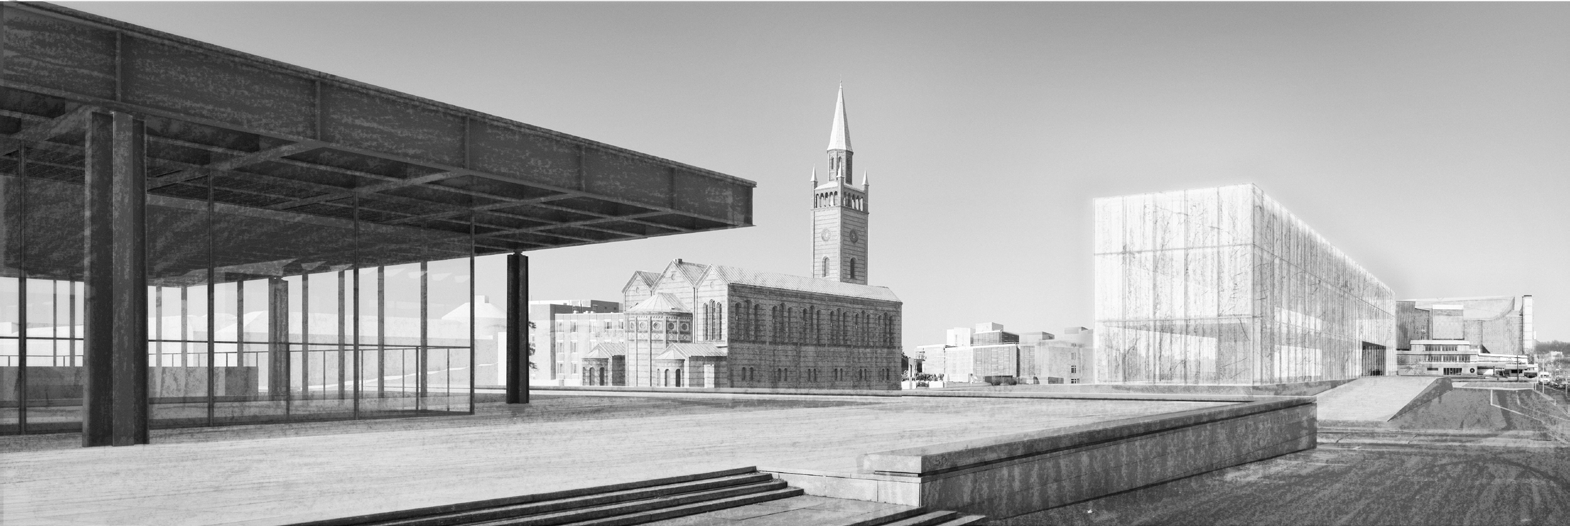 Inhalt Architekturwoche 24 Dossier Tipp Bild der Woche ARGE Kim Nalleweg César Trujillo: Entwurf für das Museum des 20. Jahrhunderts in Berlin Direktauftrag.